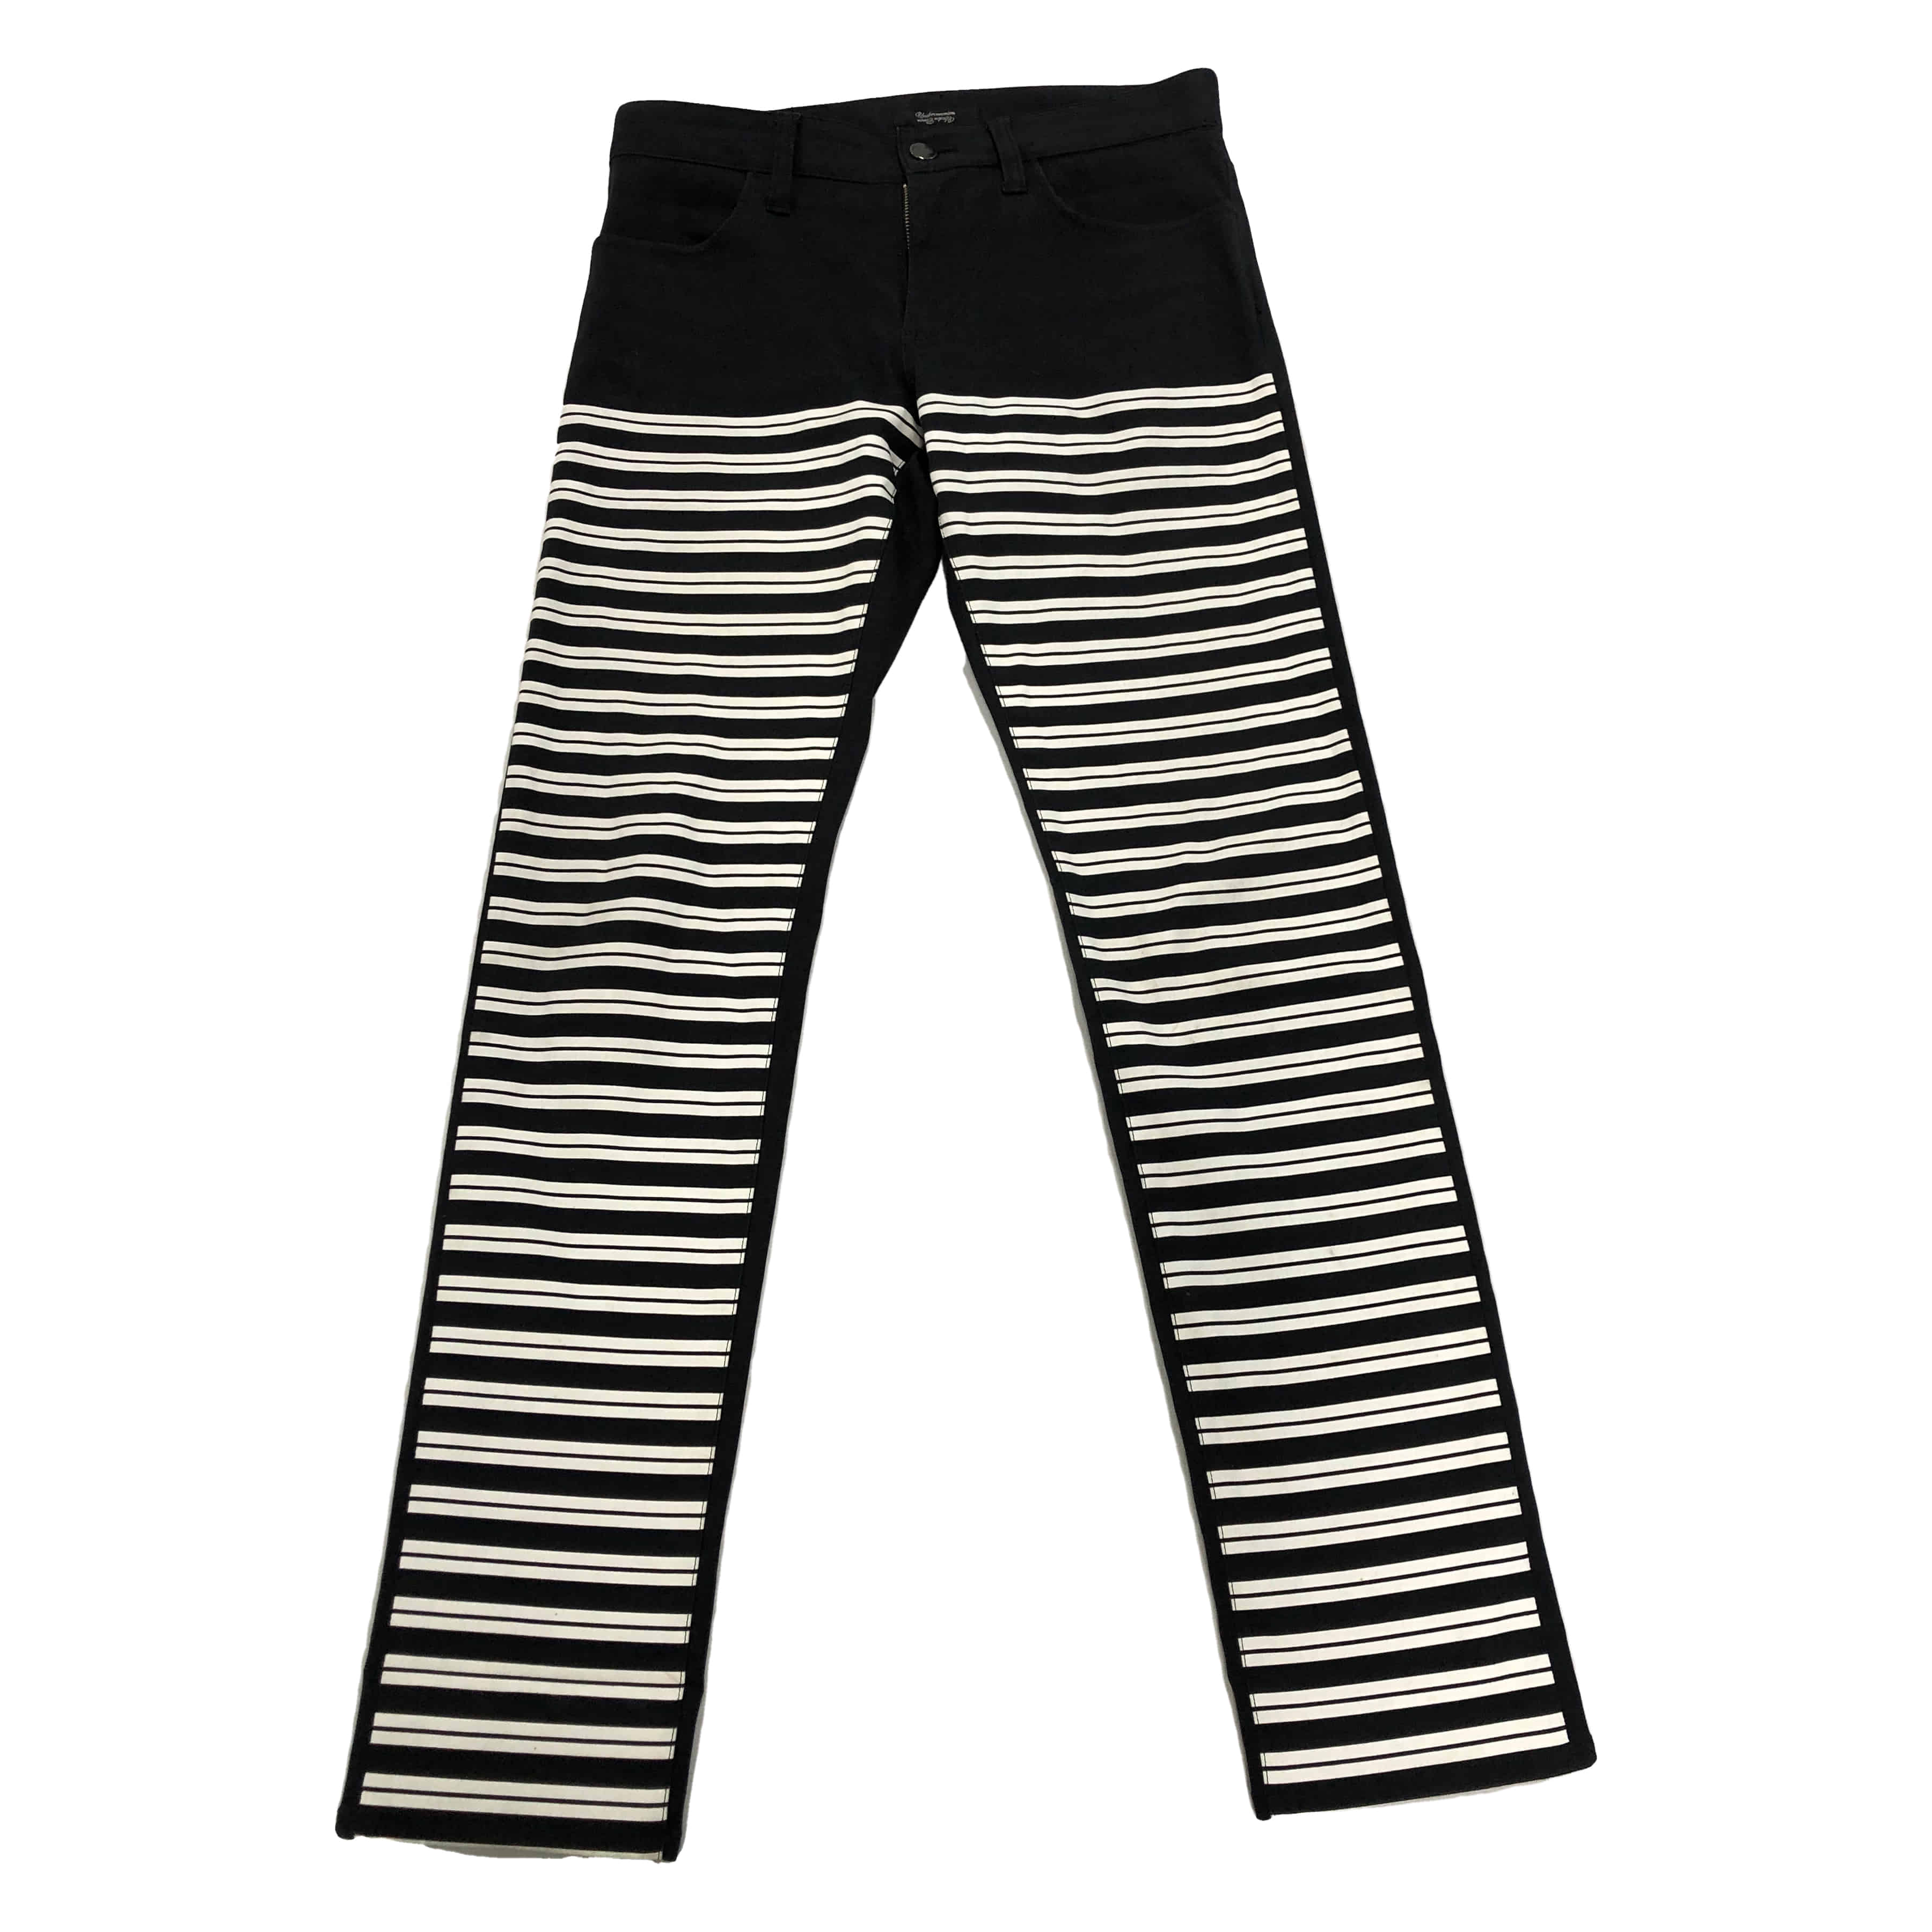 [Undercover] Prison Pants - Size 1